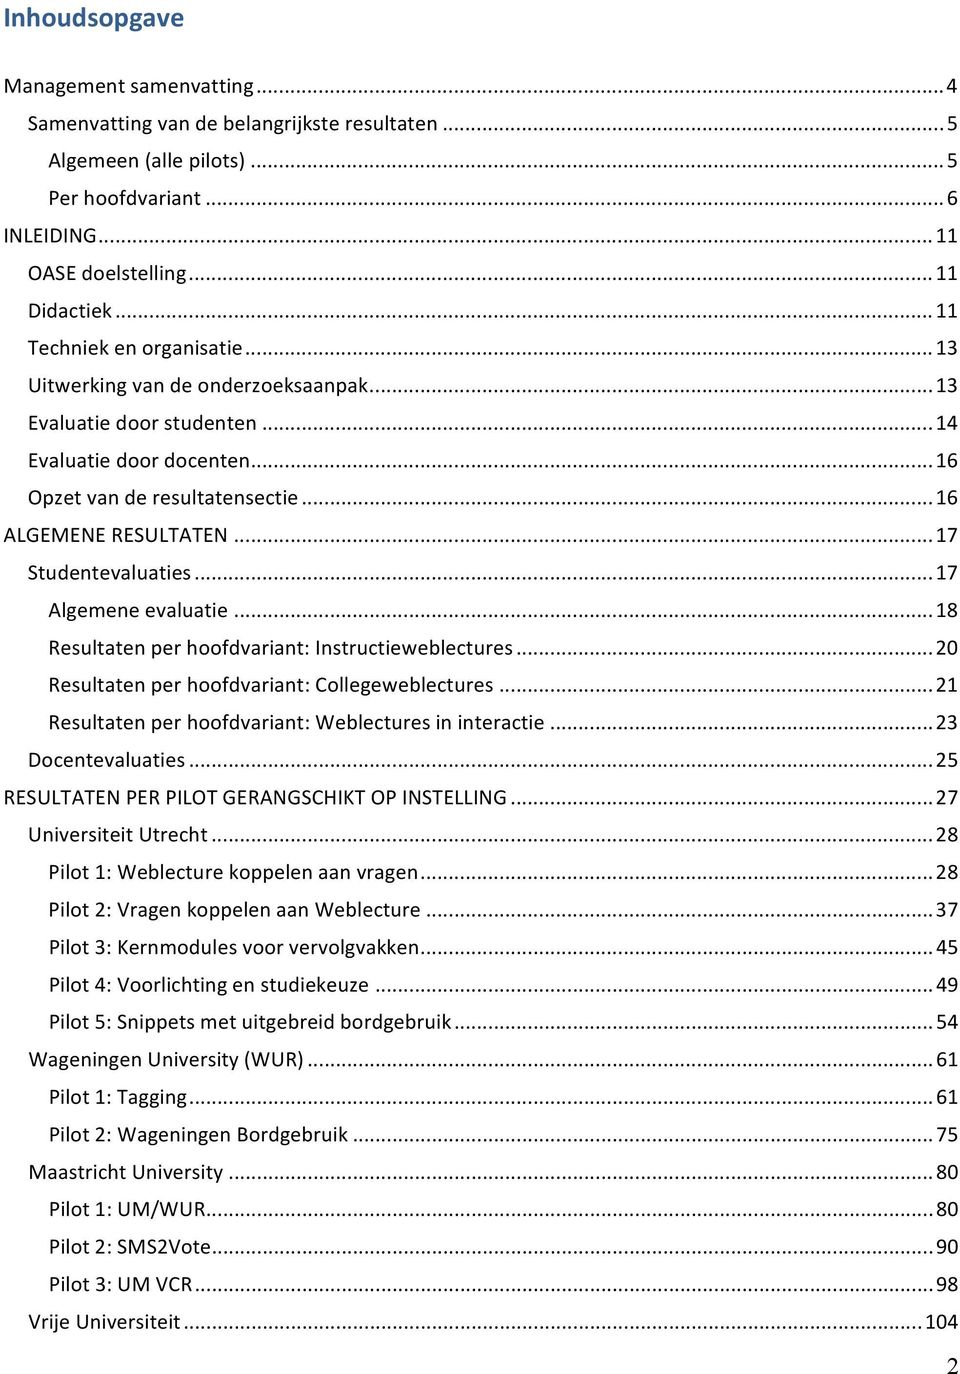 .. 17 Studentevaluaties... 17 Algemene evaluatie... 18 Resultaten per hoofdvariant: Instructieweblectures... 20 Resultaten per hoofdvariant: Collegeweblectures.